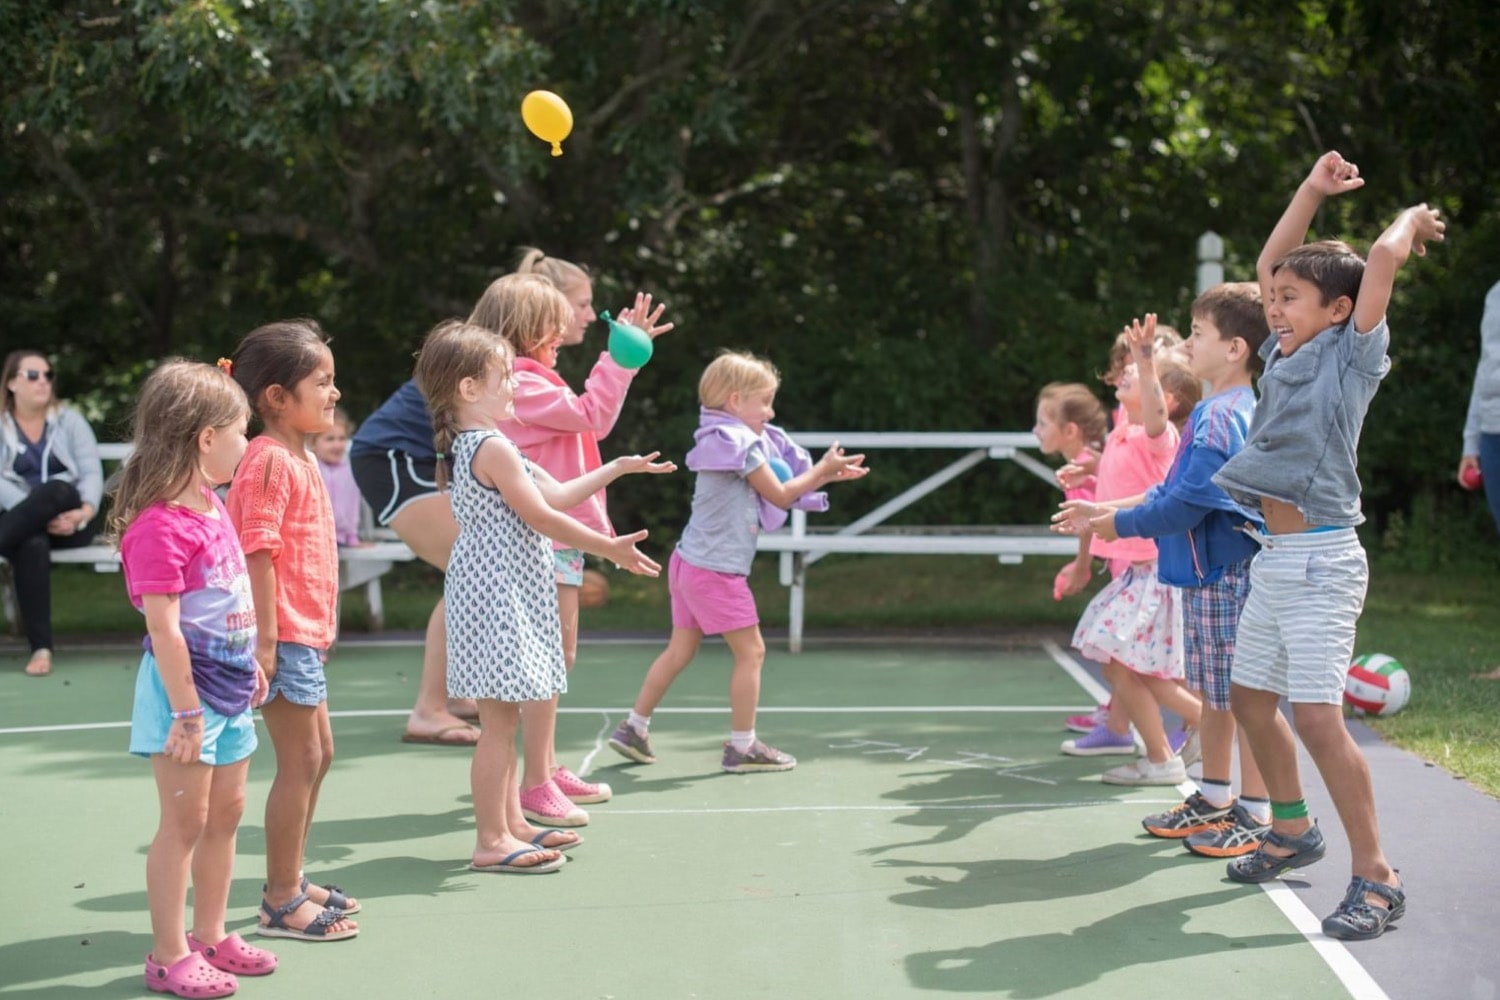 winnetu-homepage-Children-on-Tennis-Court